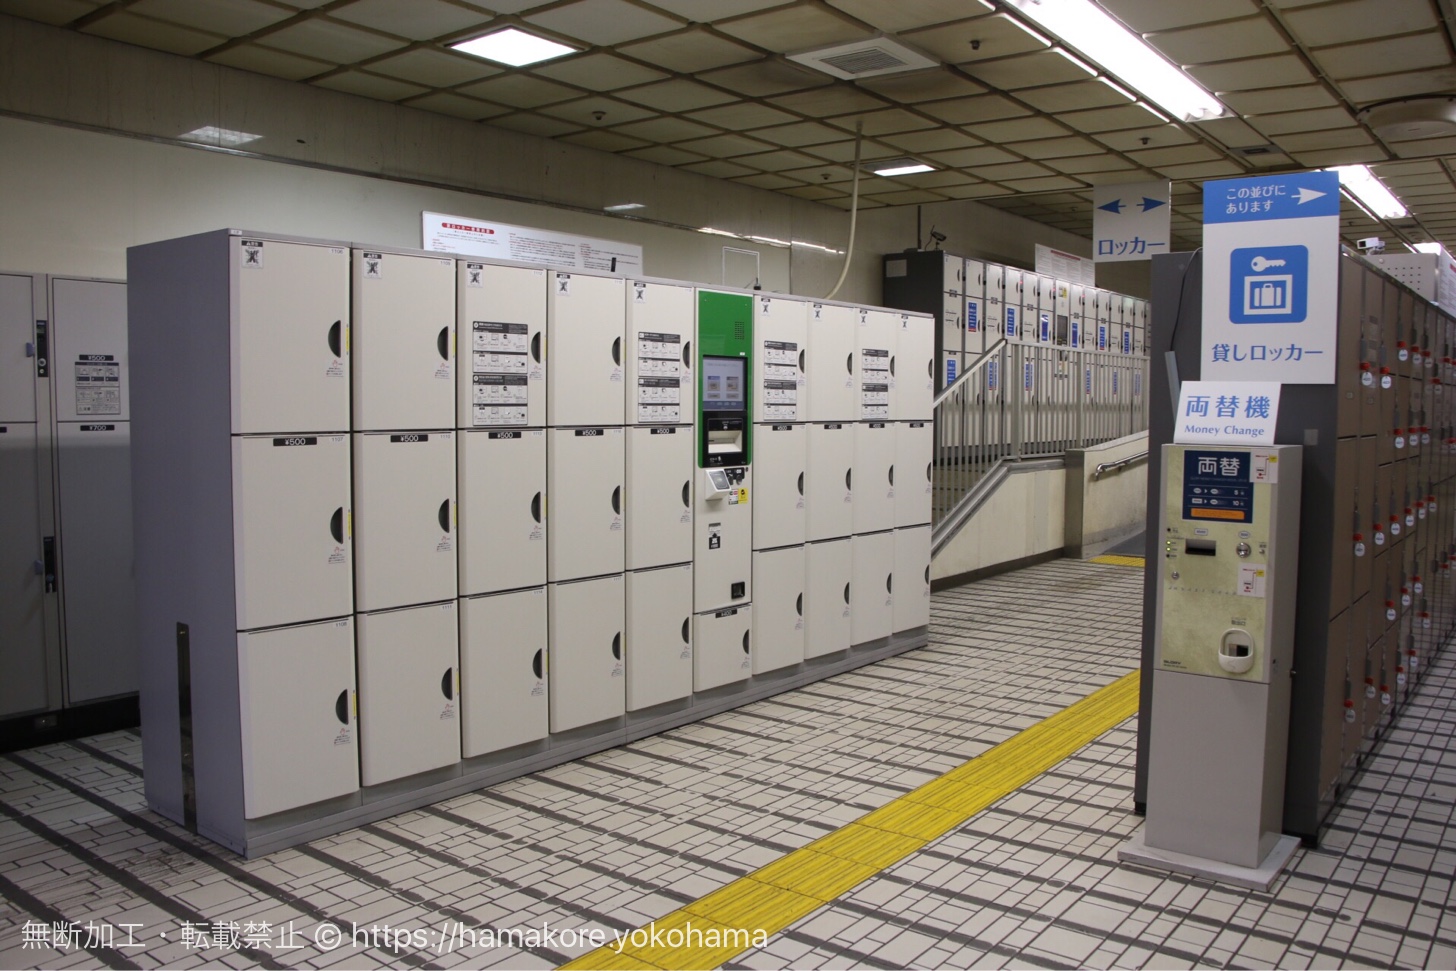 横浜駅構内 コインロッカー数が1番多い場所（約390個）への行き方とロッカーのサイズ・料金を紹介！